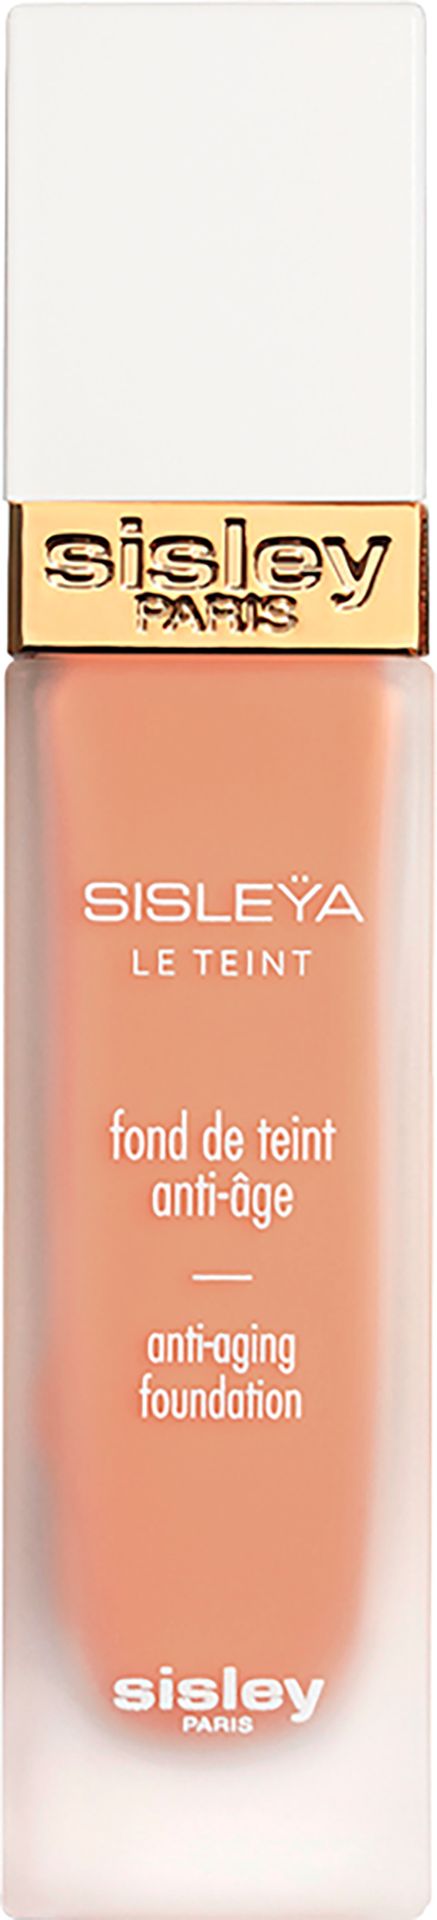 Sisley Twarz Sisleya Le Teint 30 ml